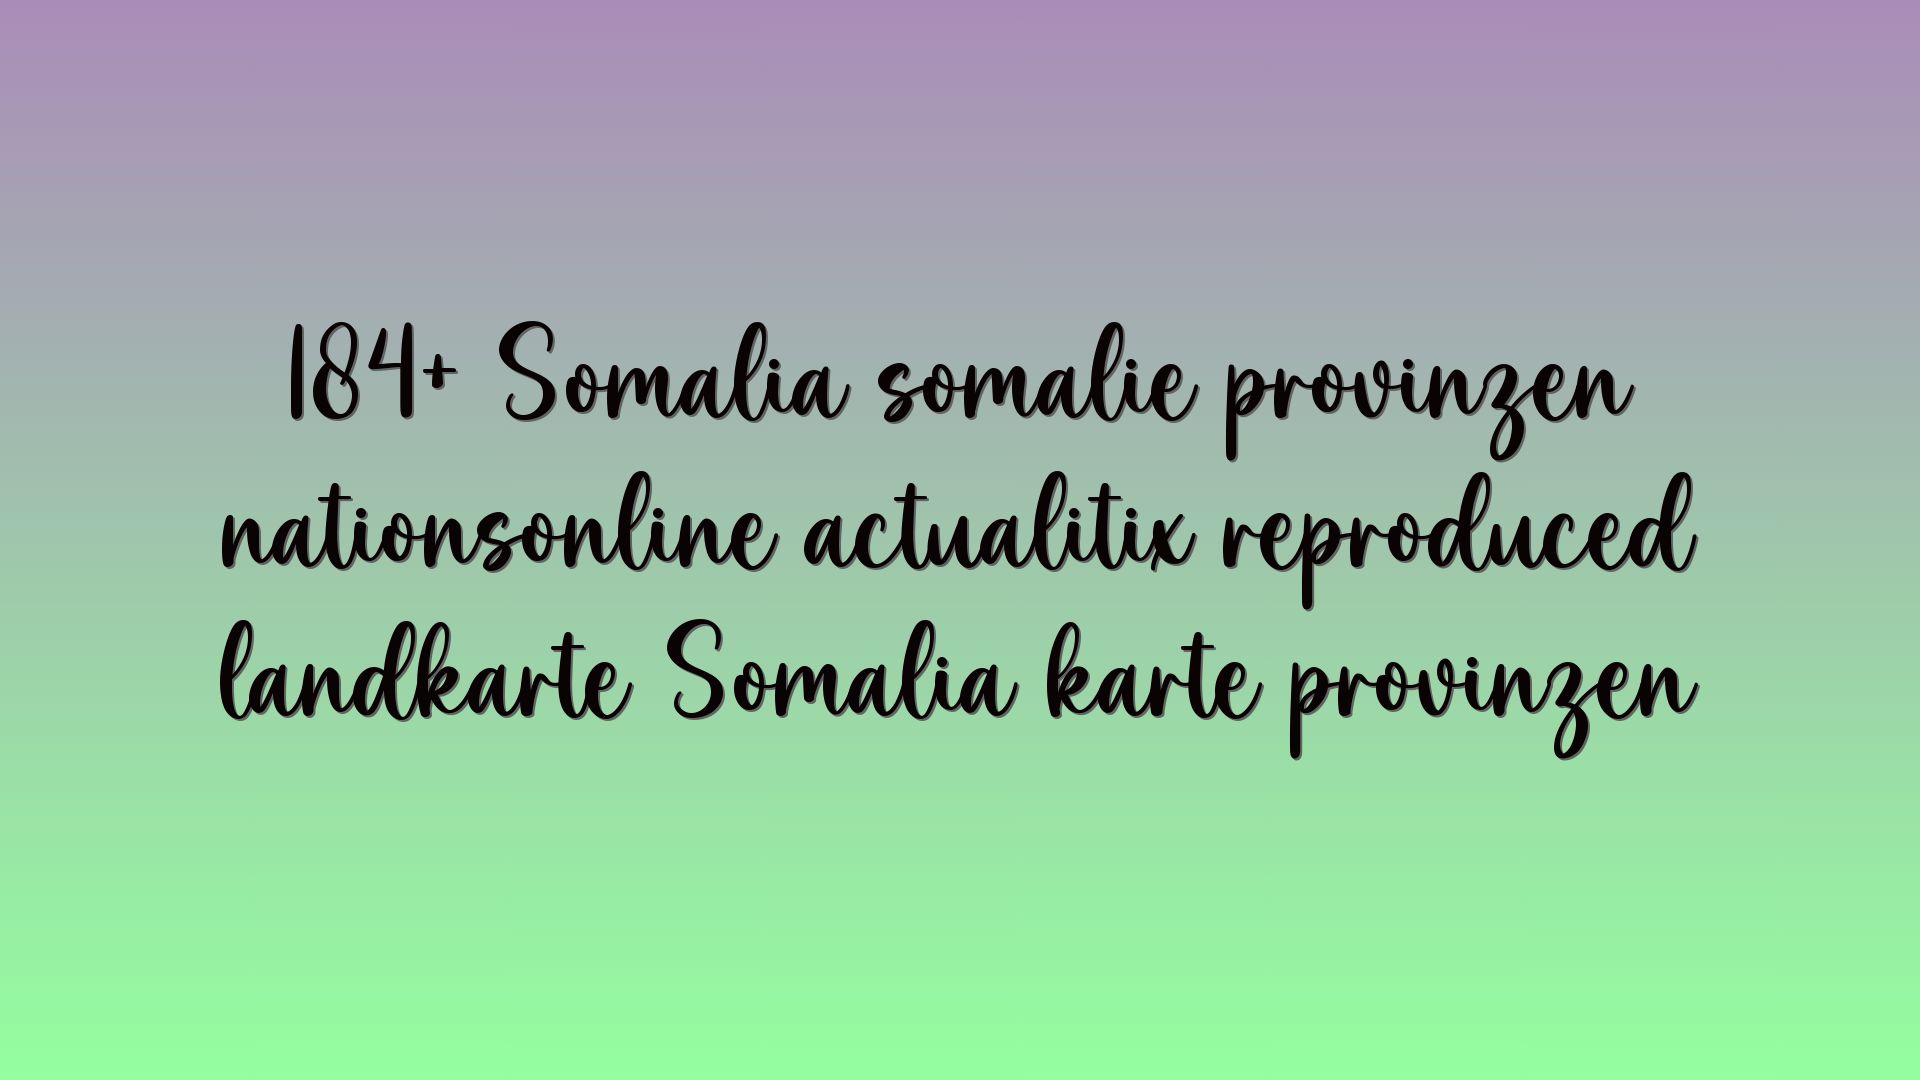 184+ Somalia somalie provinzen nationsonline actualitix reproduced landkarte Somalia karte provinzen